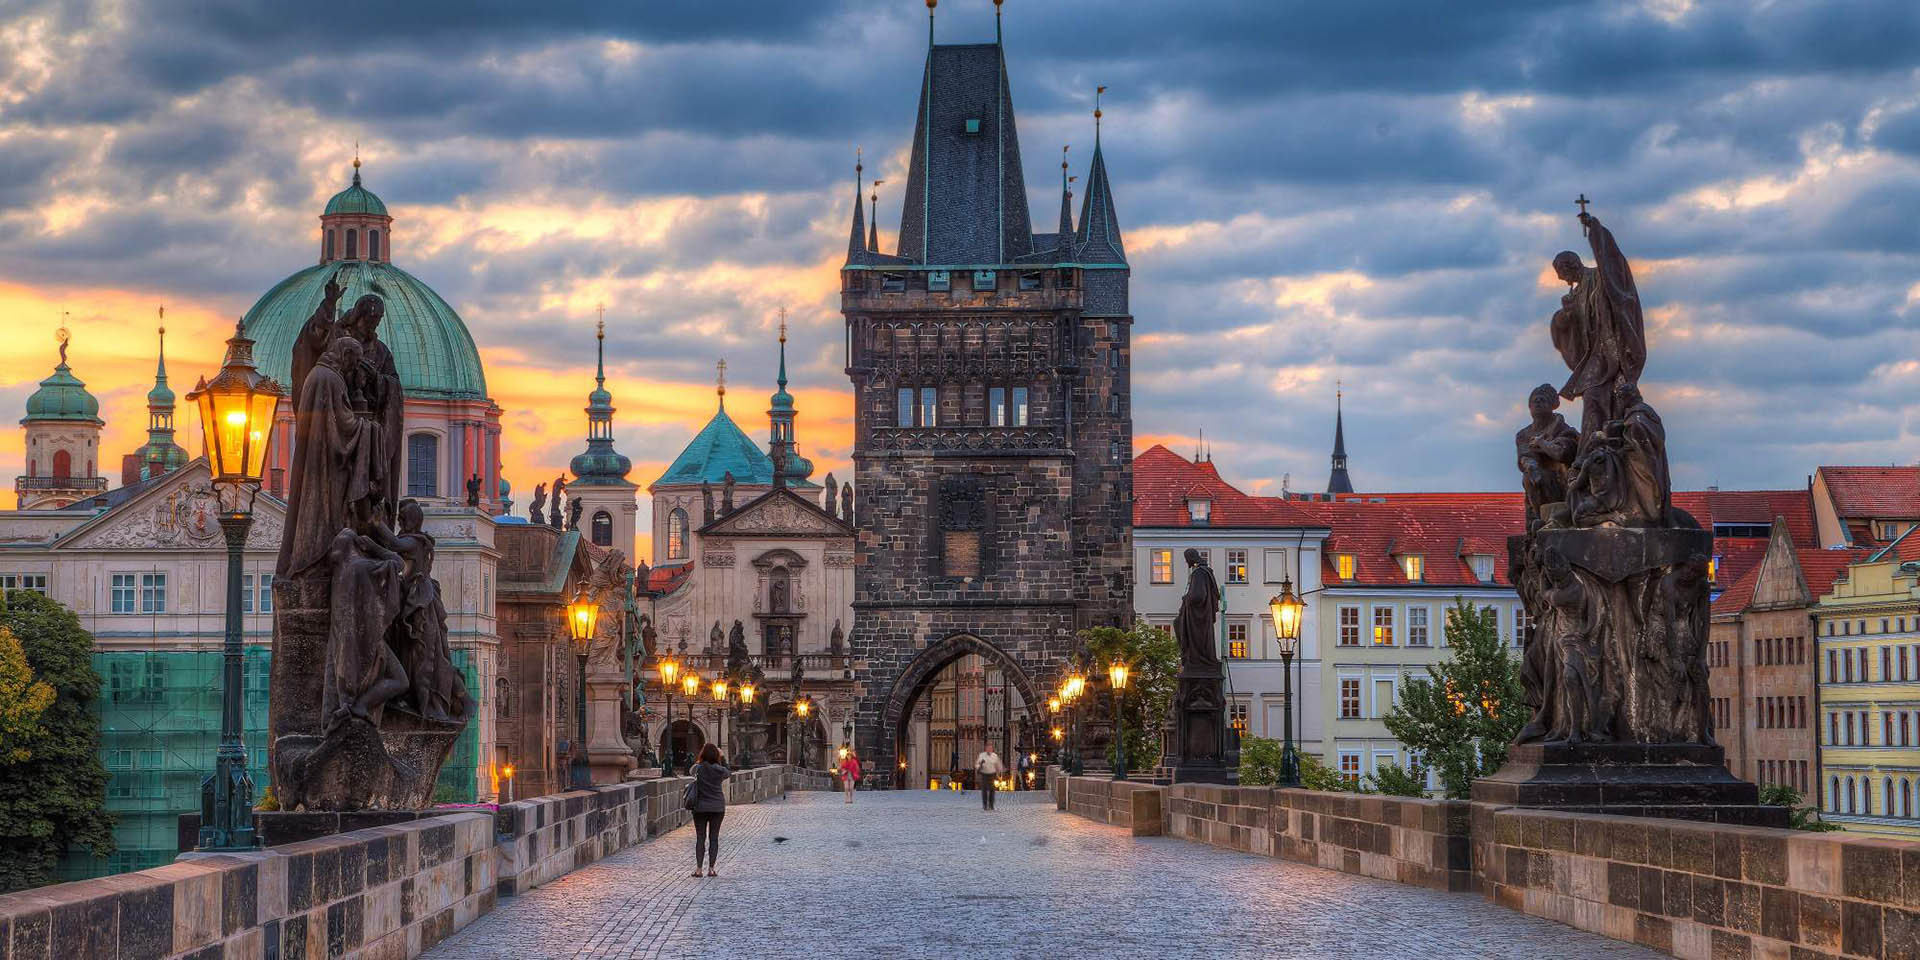 Автобусный тур в Чехию и Германию: Экспресс тур: Прага + Дрезден